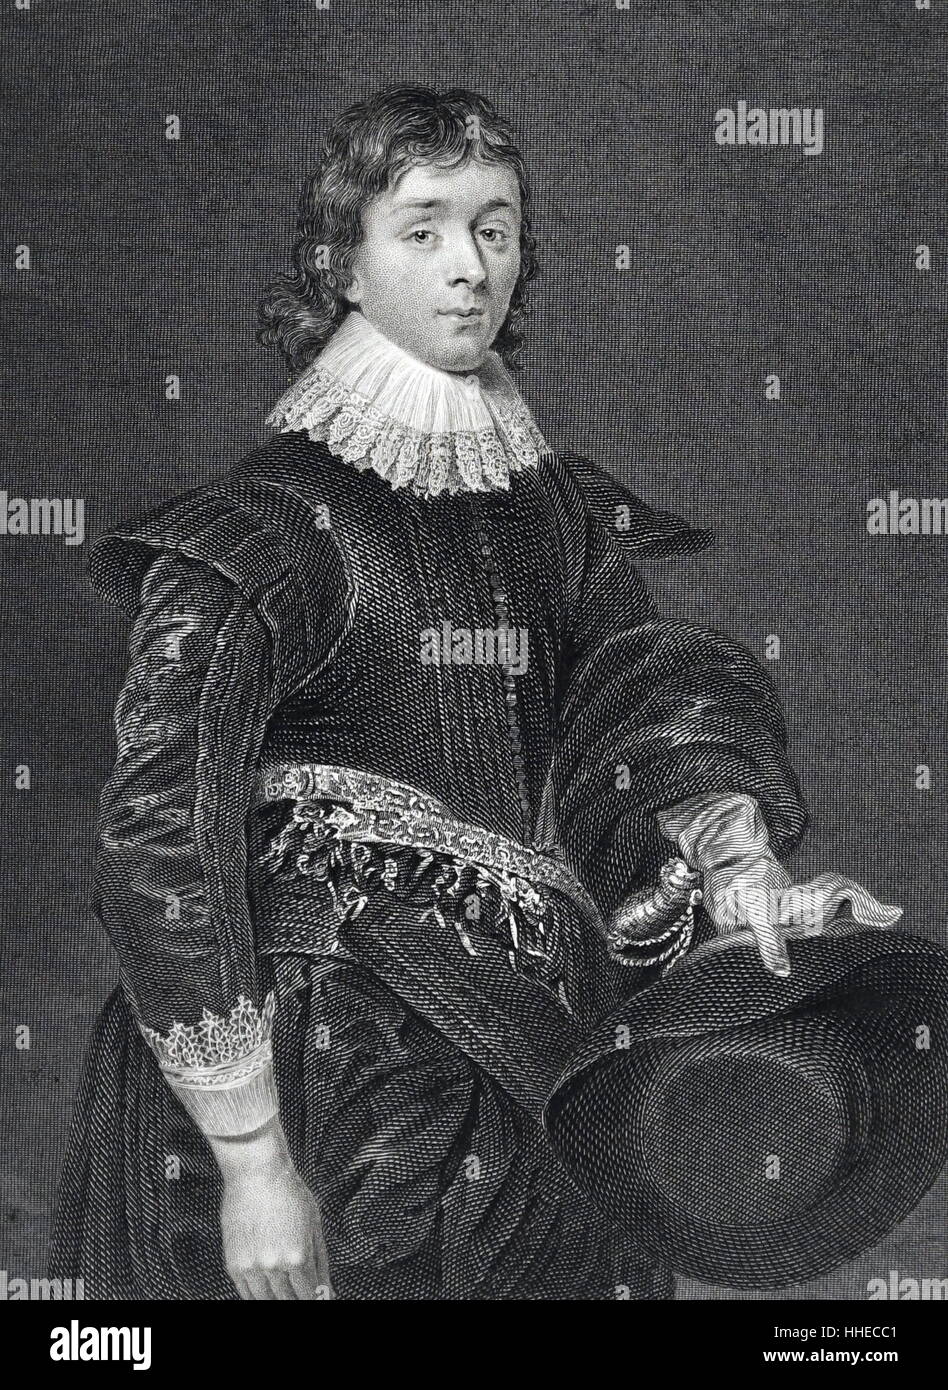 John Hamilton, 1er marquis de Hamilton (1532-1601), noble écossais Banque D'Images